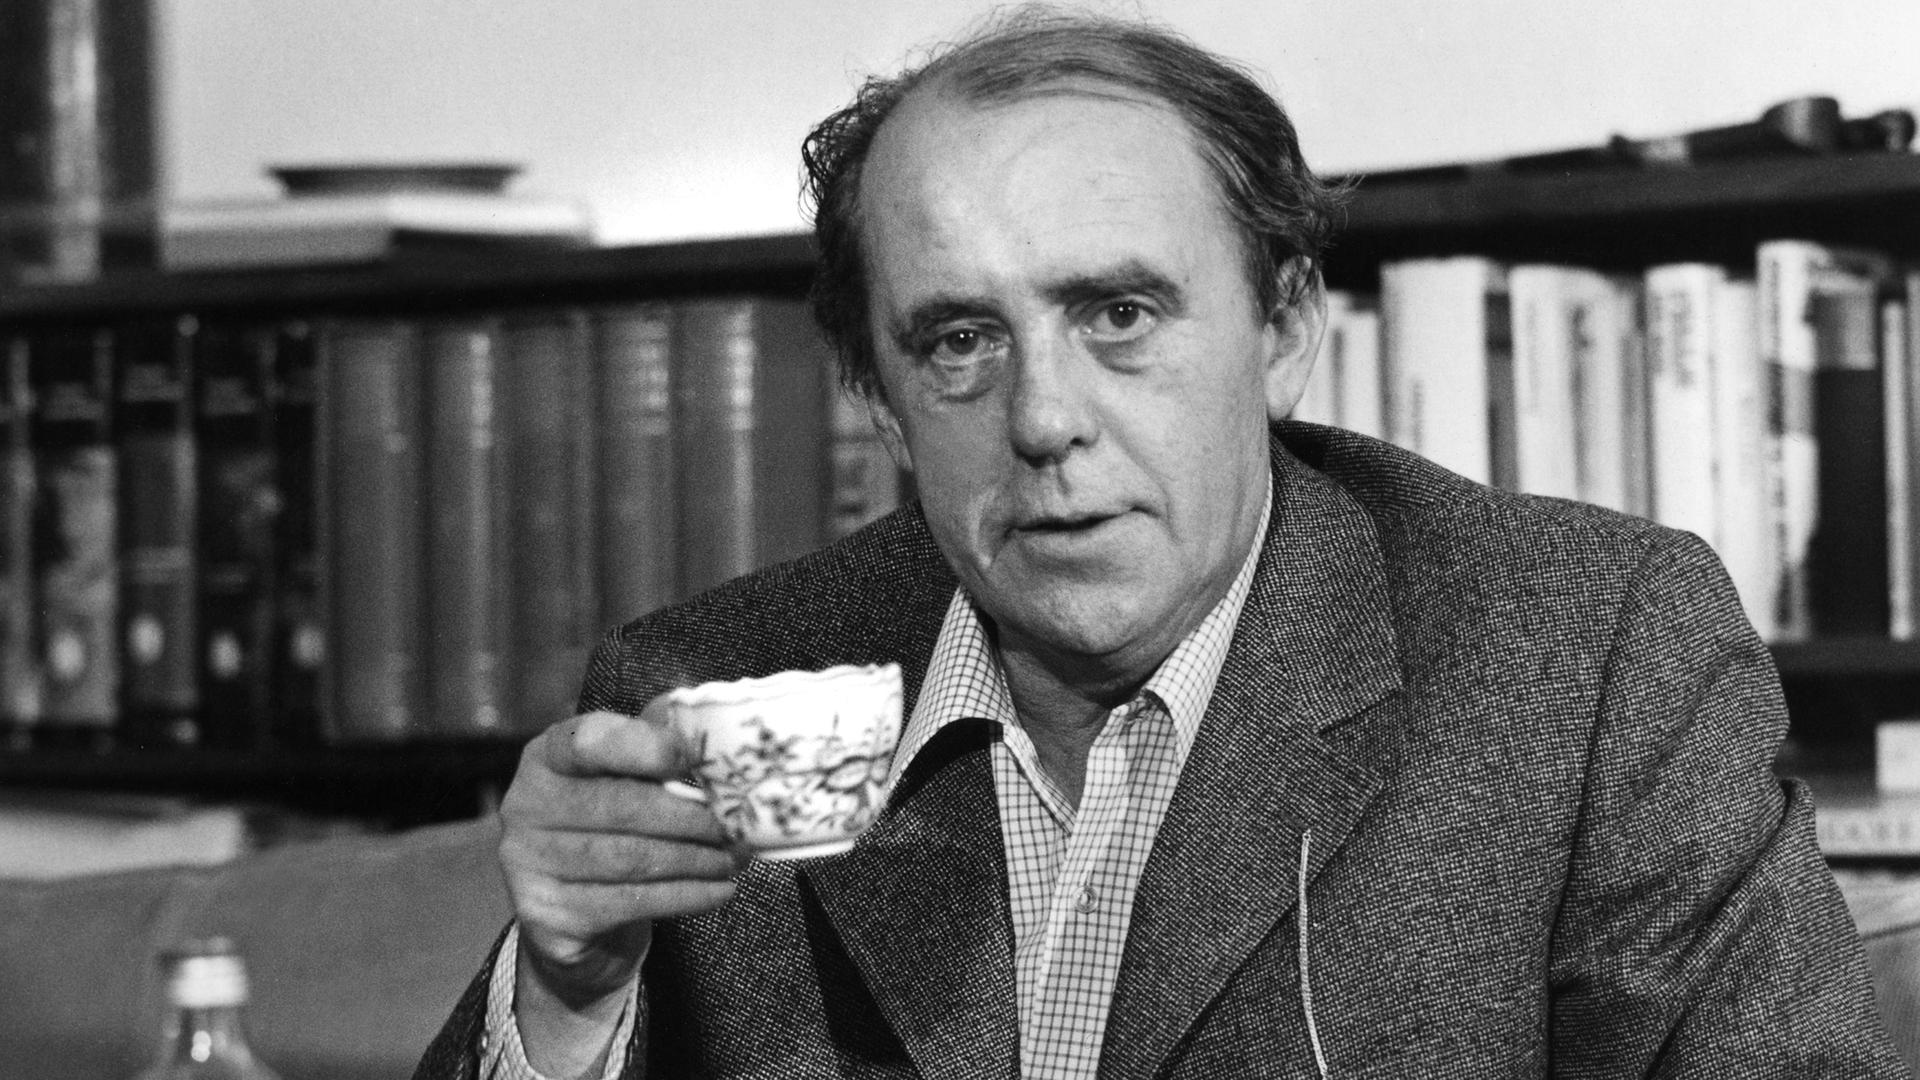 Schwarzweißaufnahme von Heinrich Böll, der mit Kaffeetasse und Zigarette in seiner Wohnung an einem Kaffeetisch sitzt.